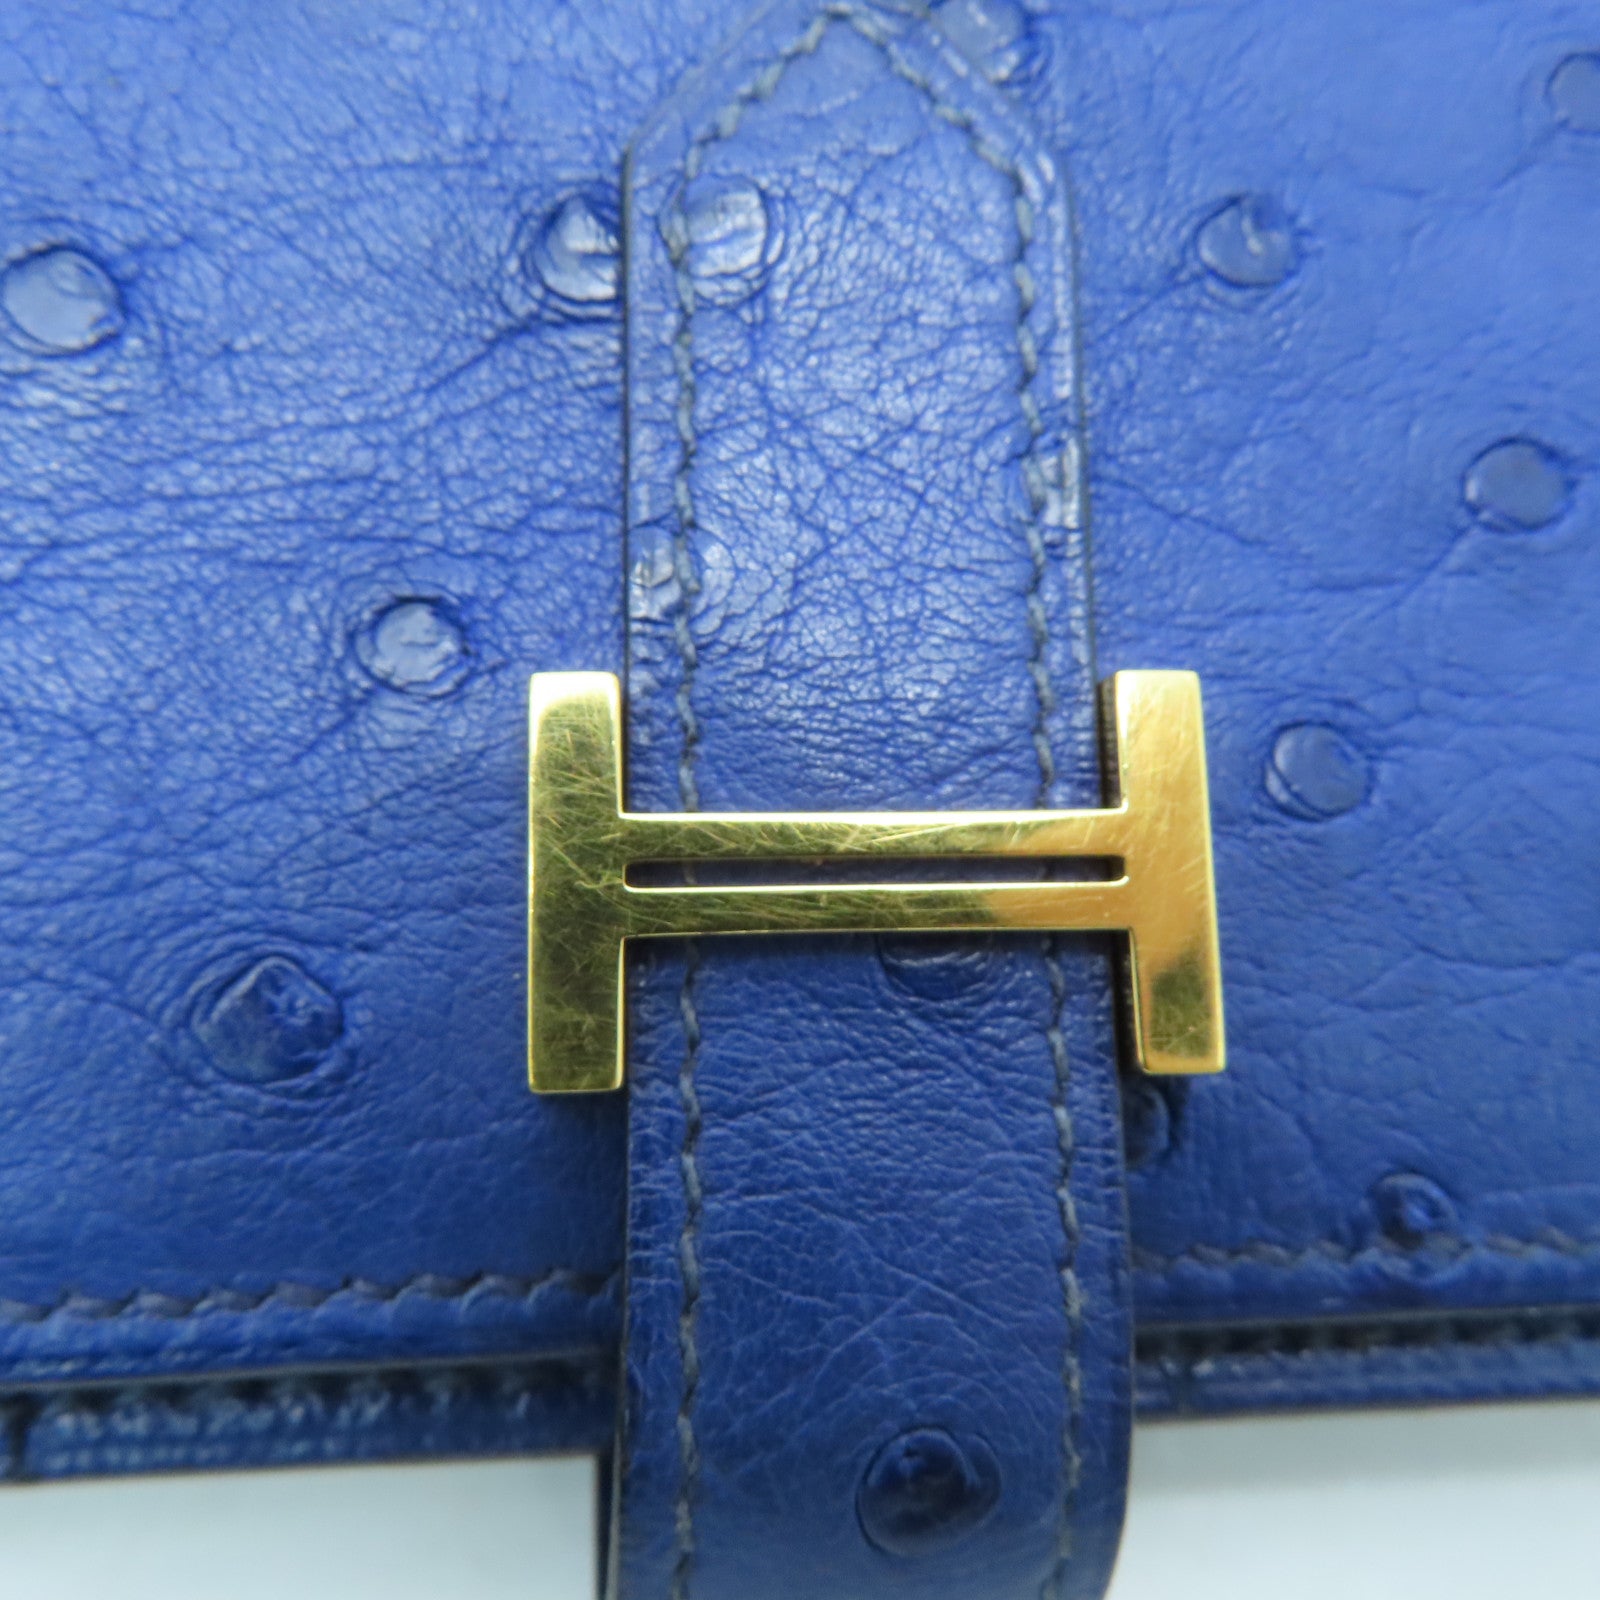 Luxe Maison - Bnib Hermes Compact Wallet bleuet ostrich